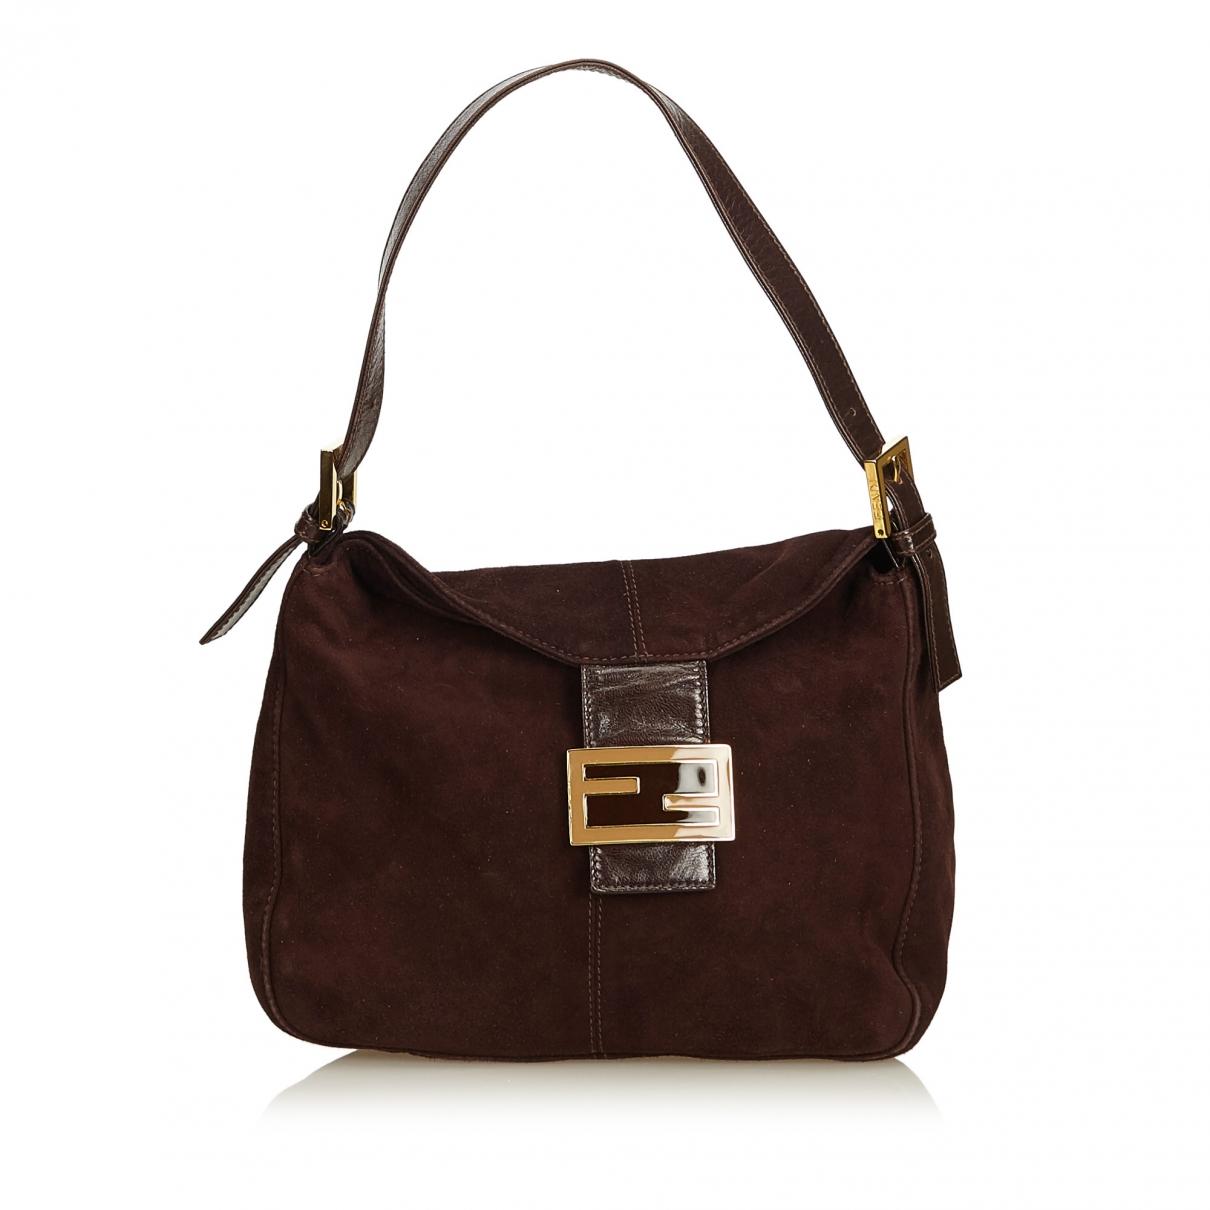 Lyst - Fendi Pre-owned Vintage Baguette Brown Suede Handbags in Brown - Save 10%